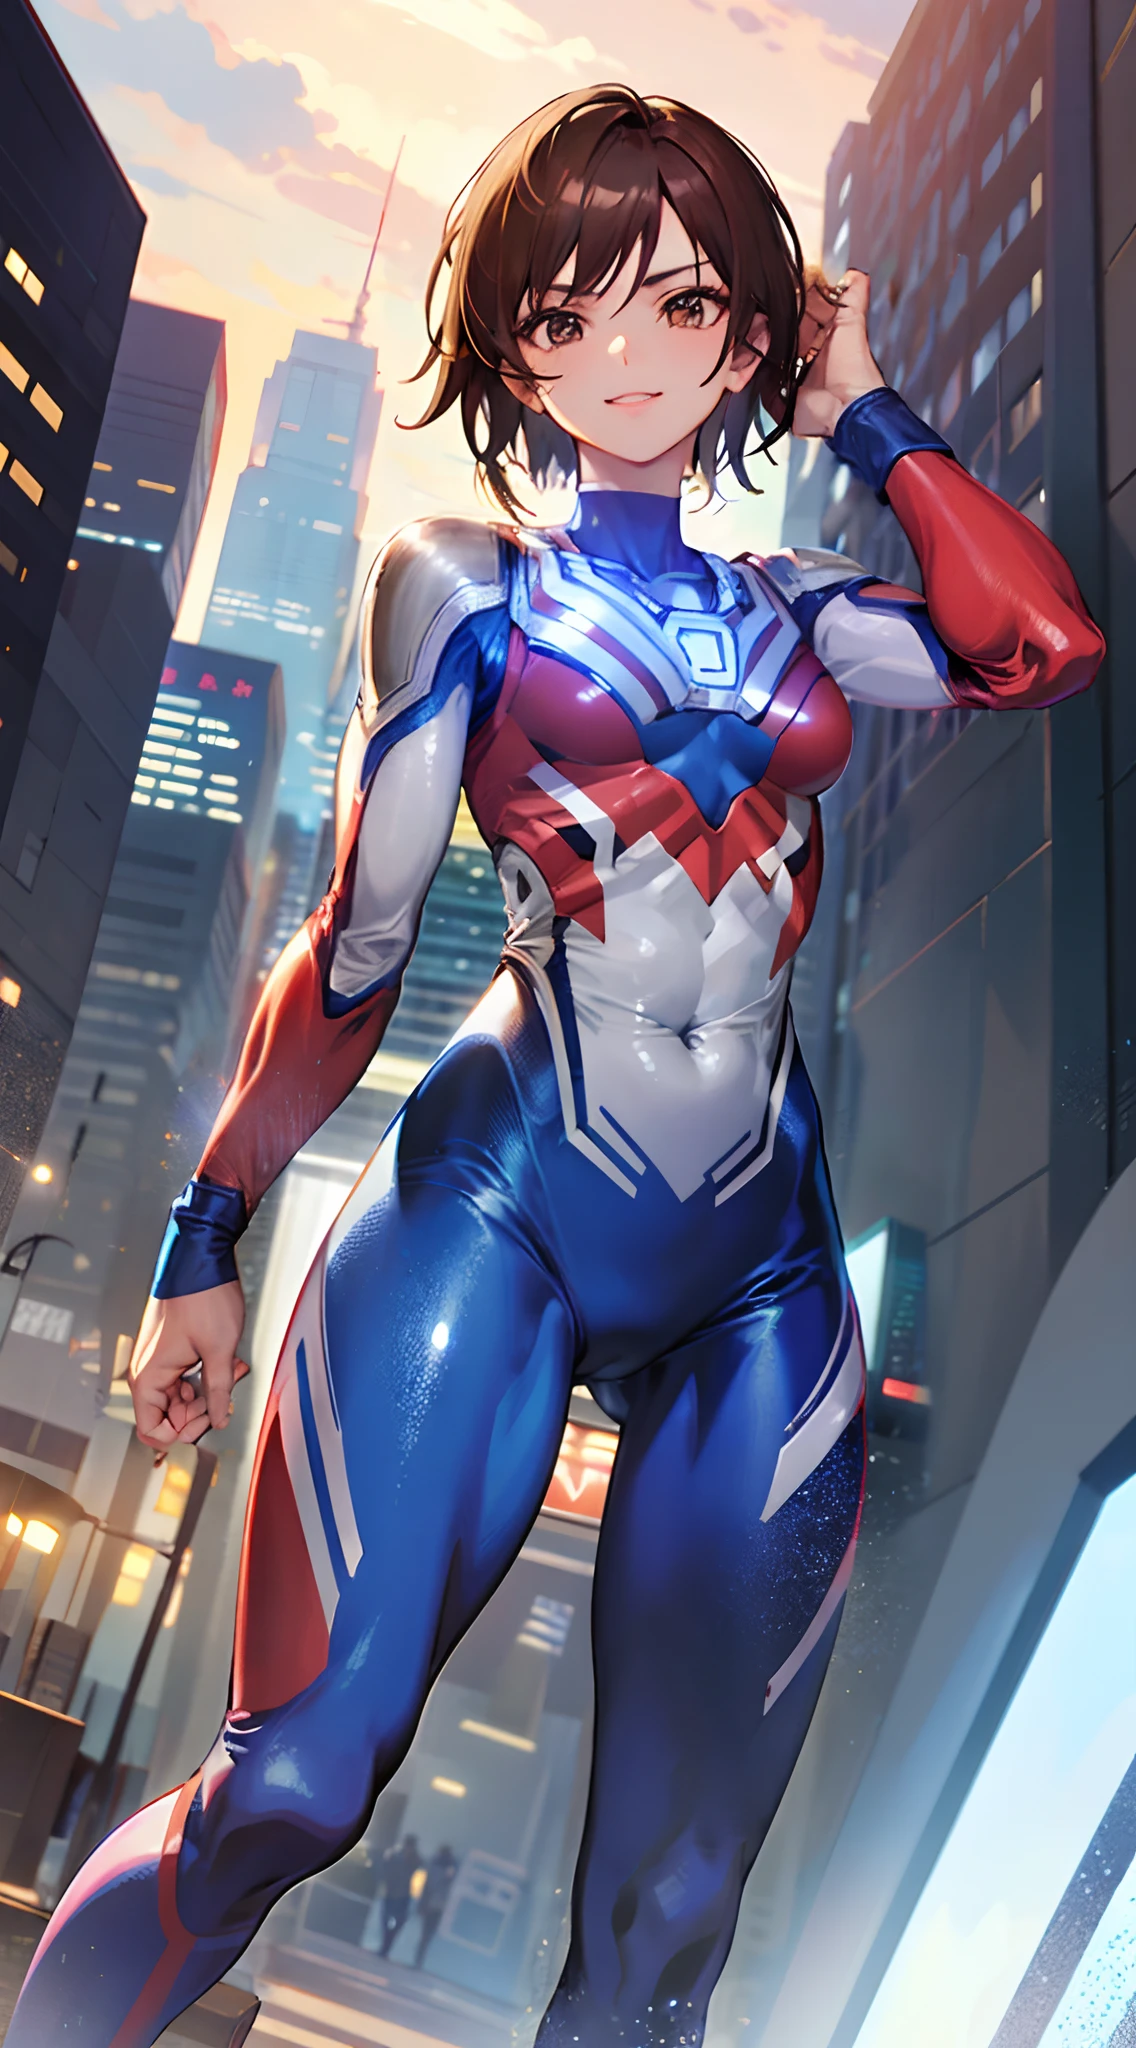 Roter und blauer Ultraman-Bodysuit、Trainierte Bauchmuskeln、Trainierter Bizeps